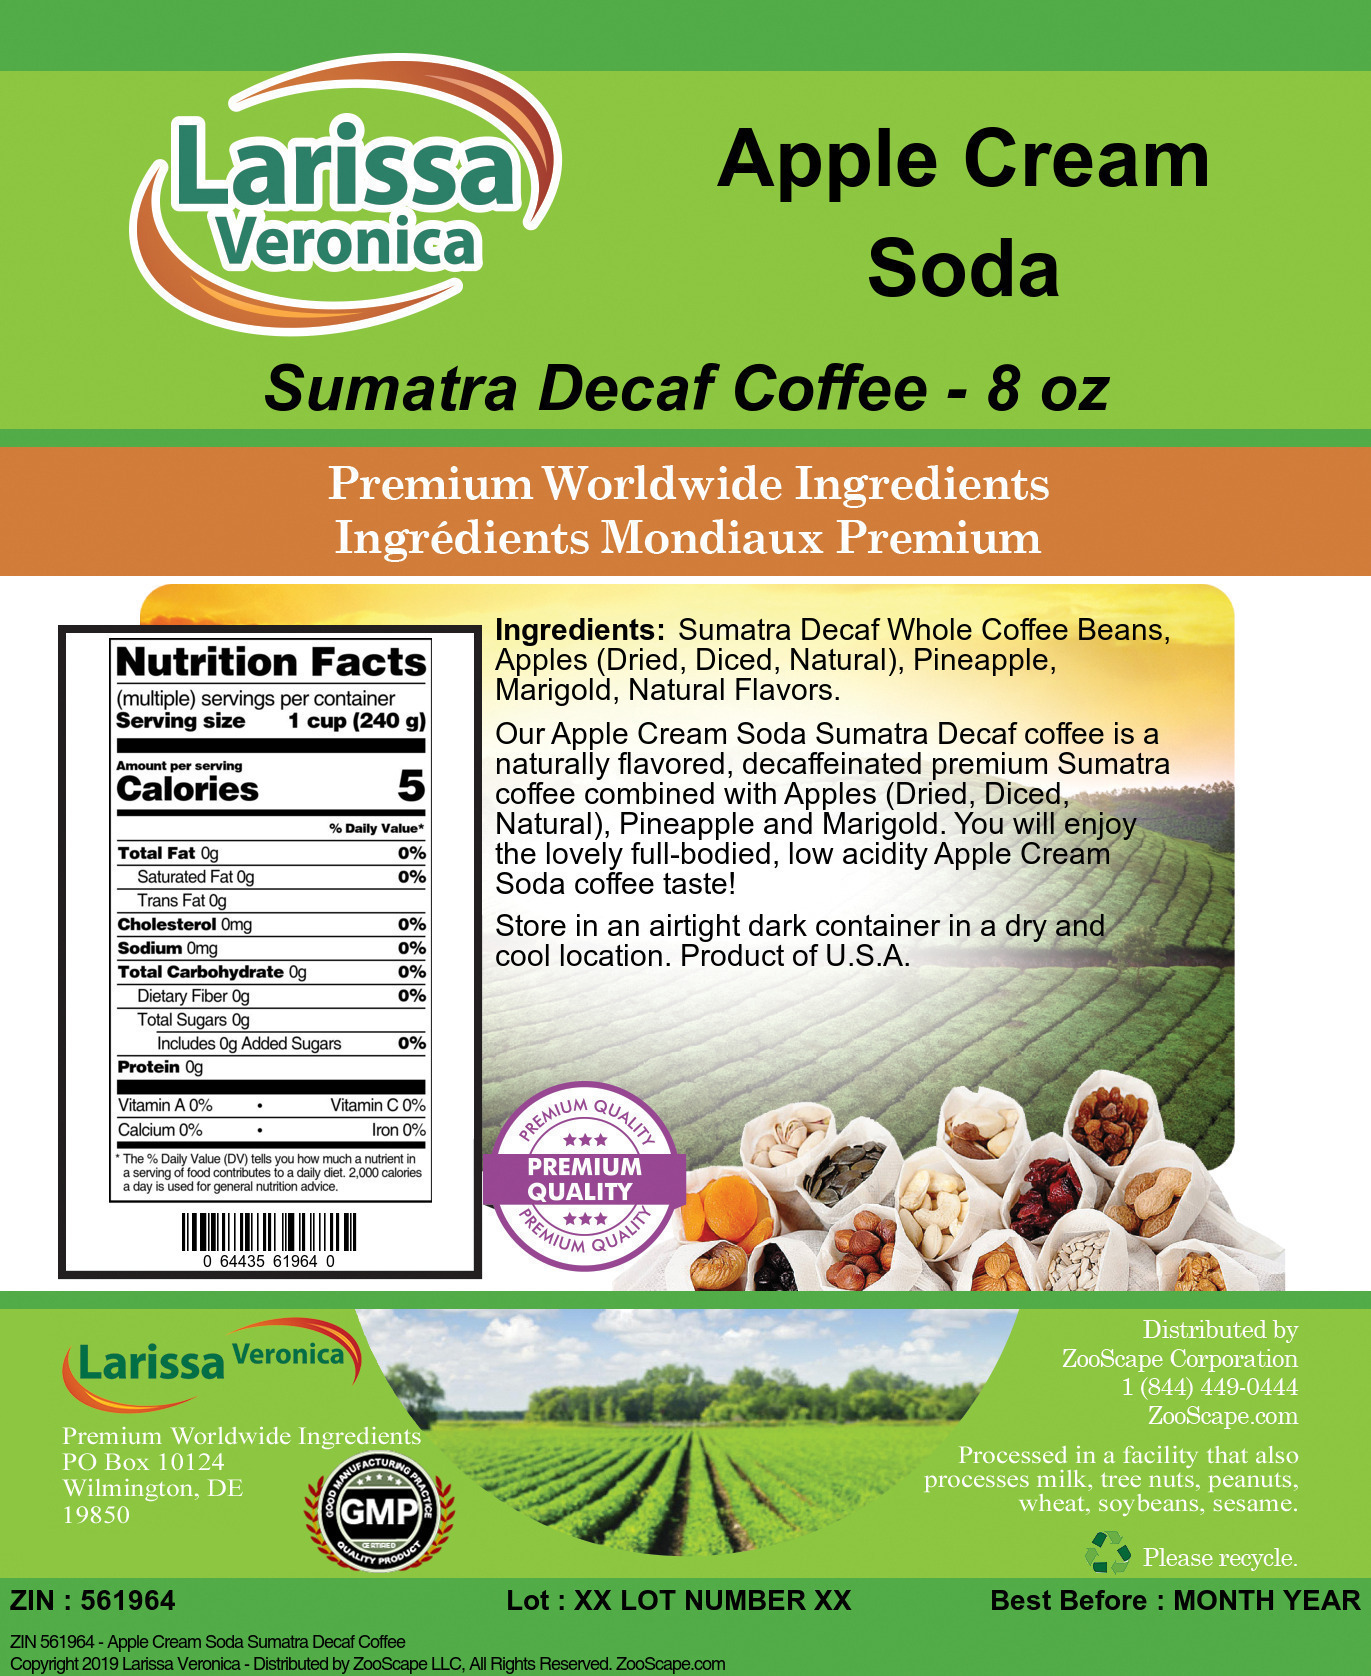 Apple Cream Soda Sumatra Decaf Coffee - Label